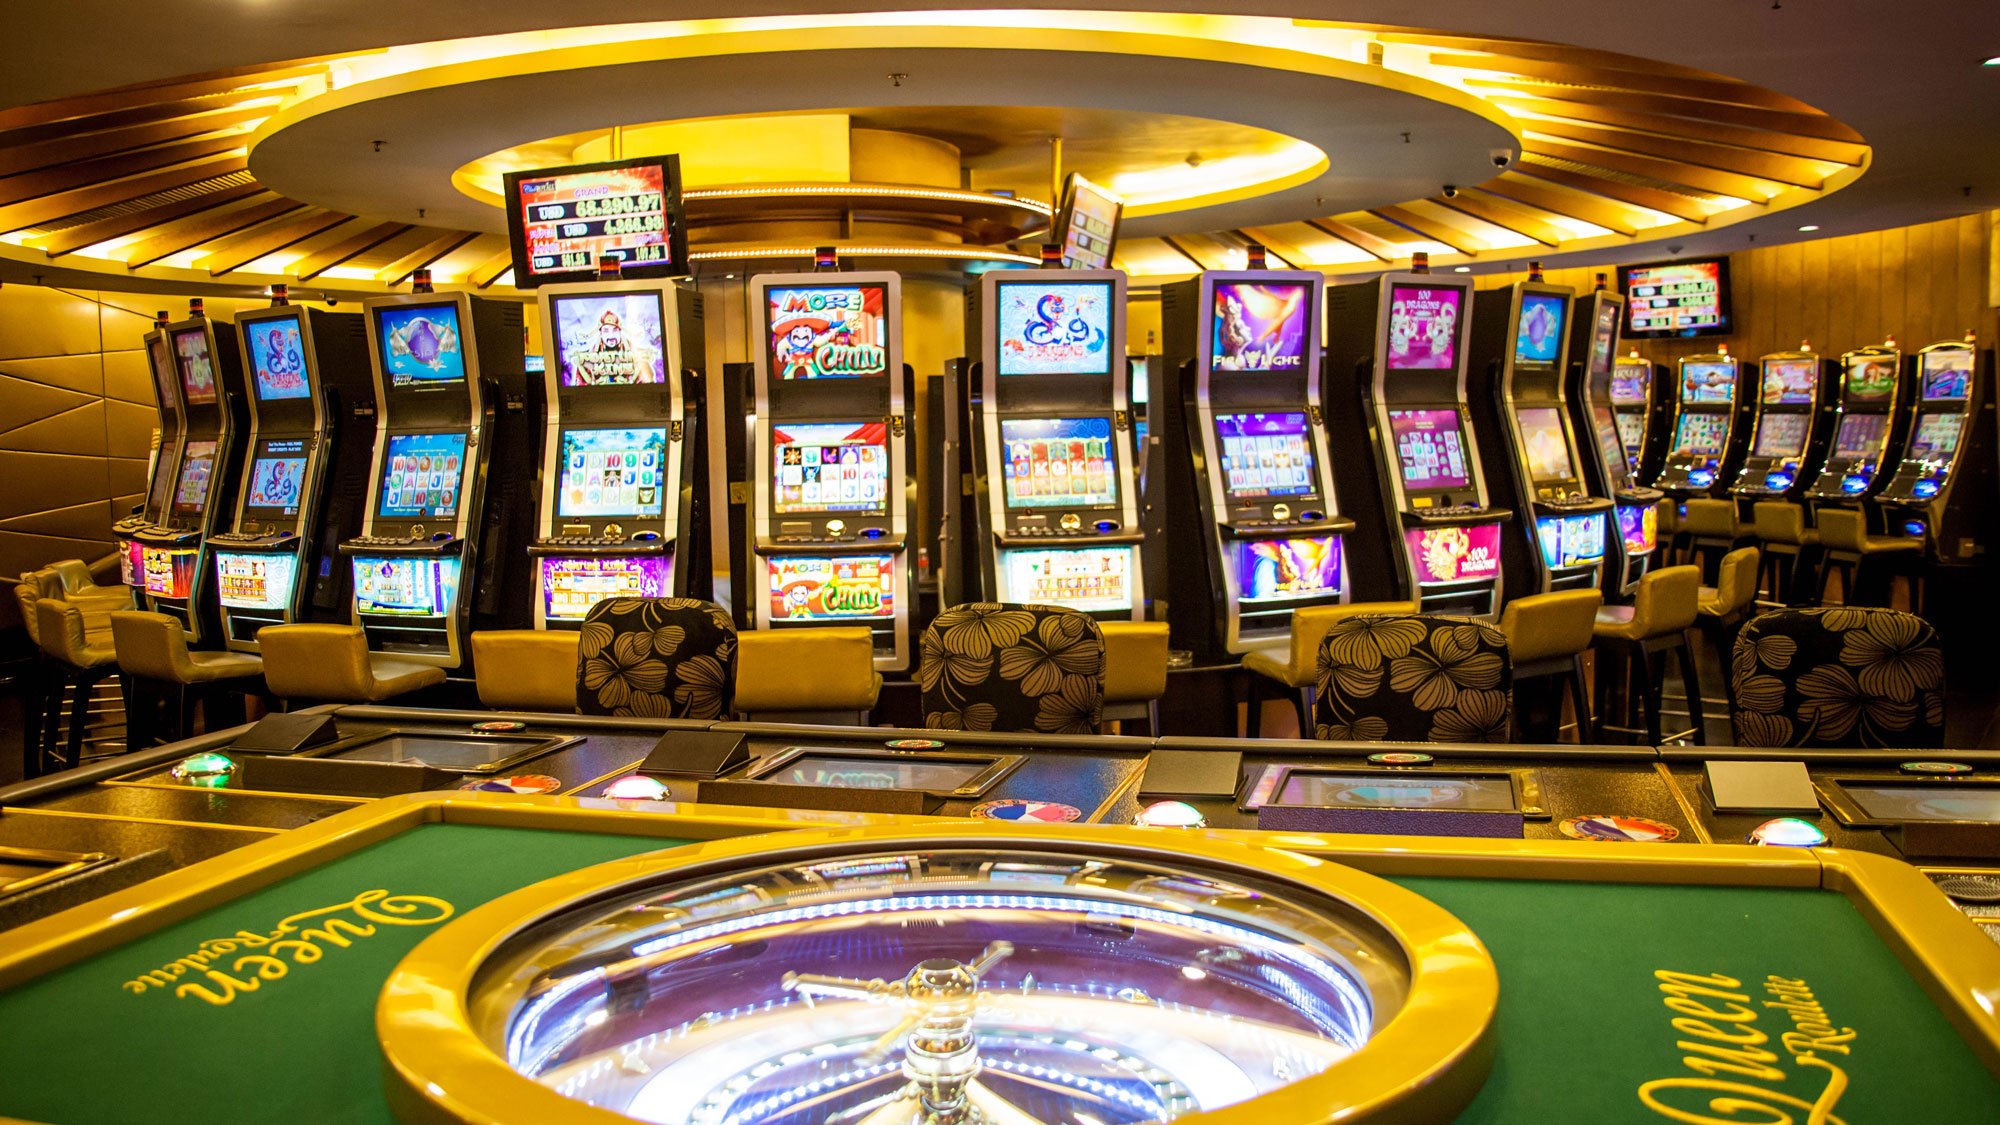 Slot casino malaysia fora mostbet зеркало скачать приложение код ошибки